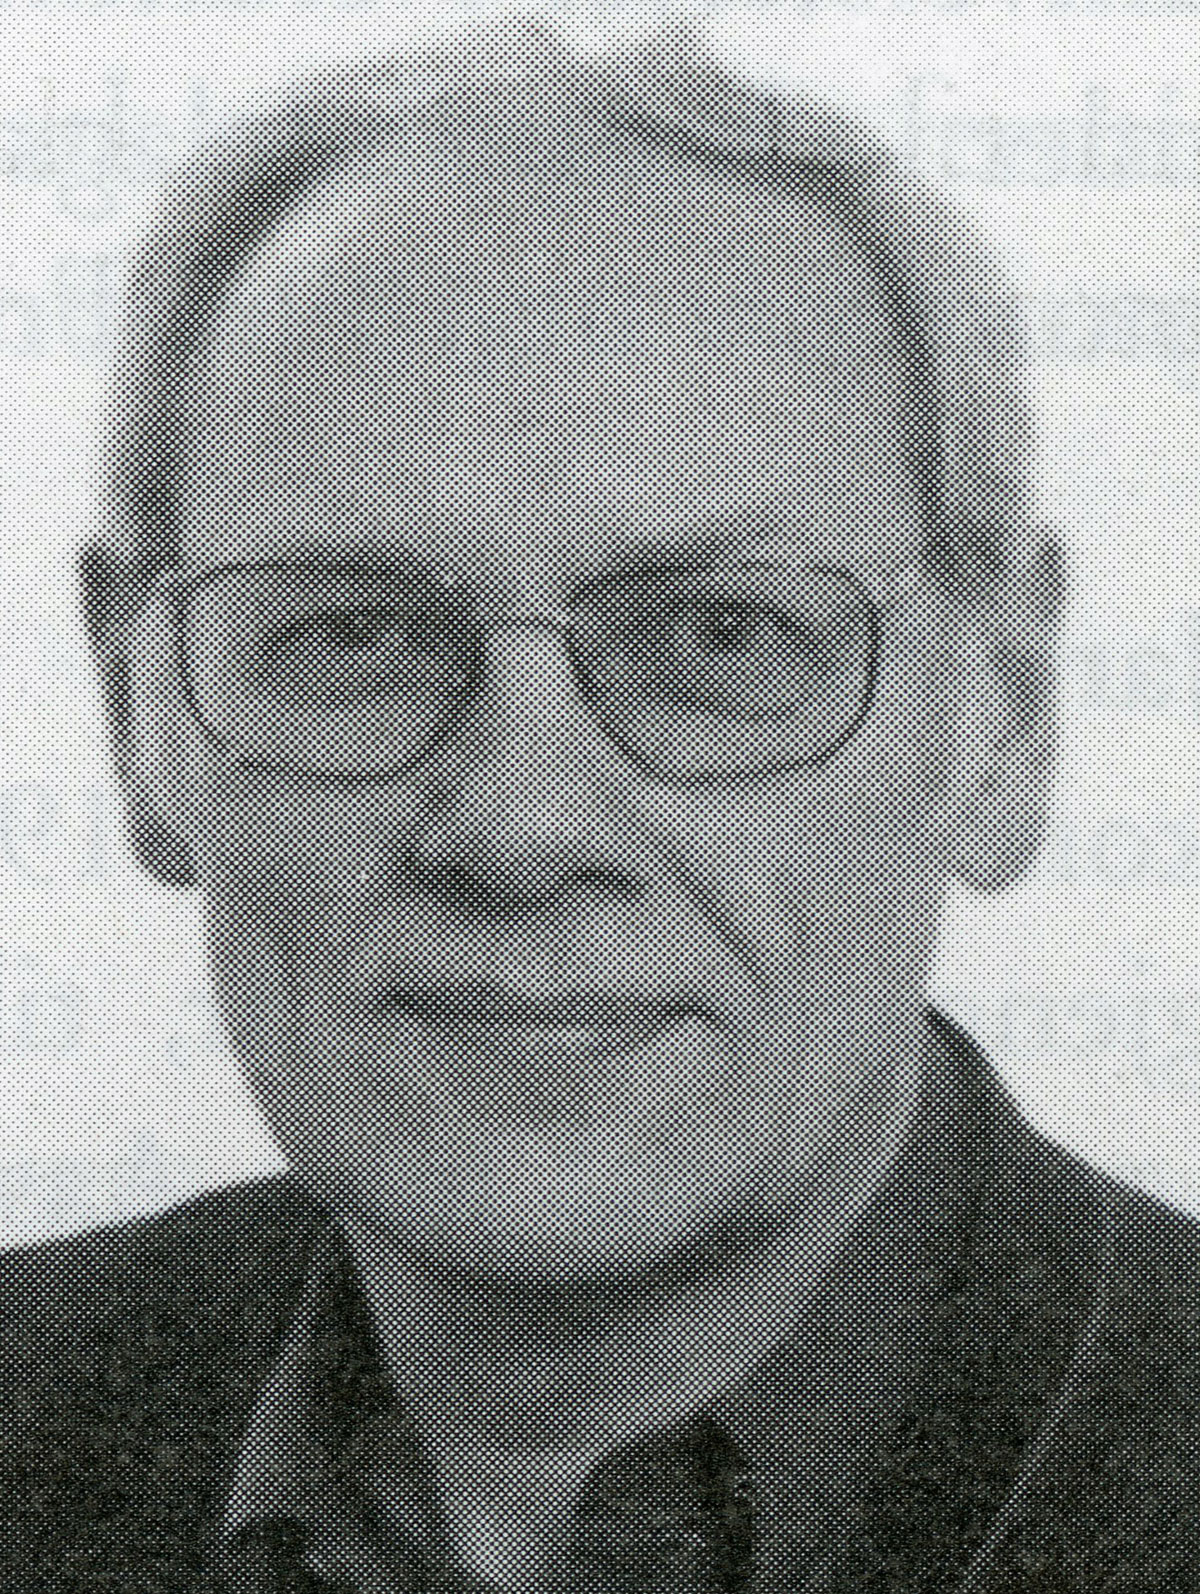 Olav Skevik